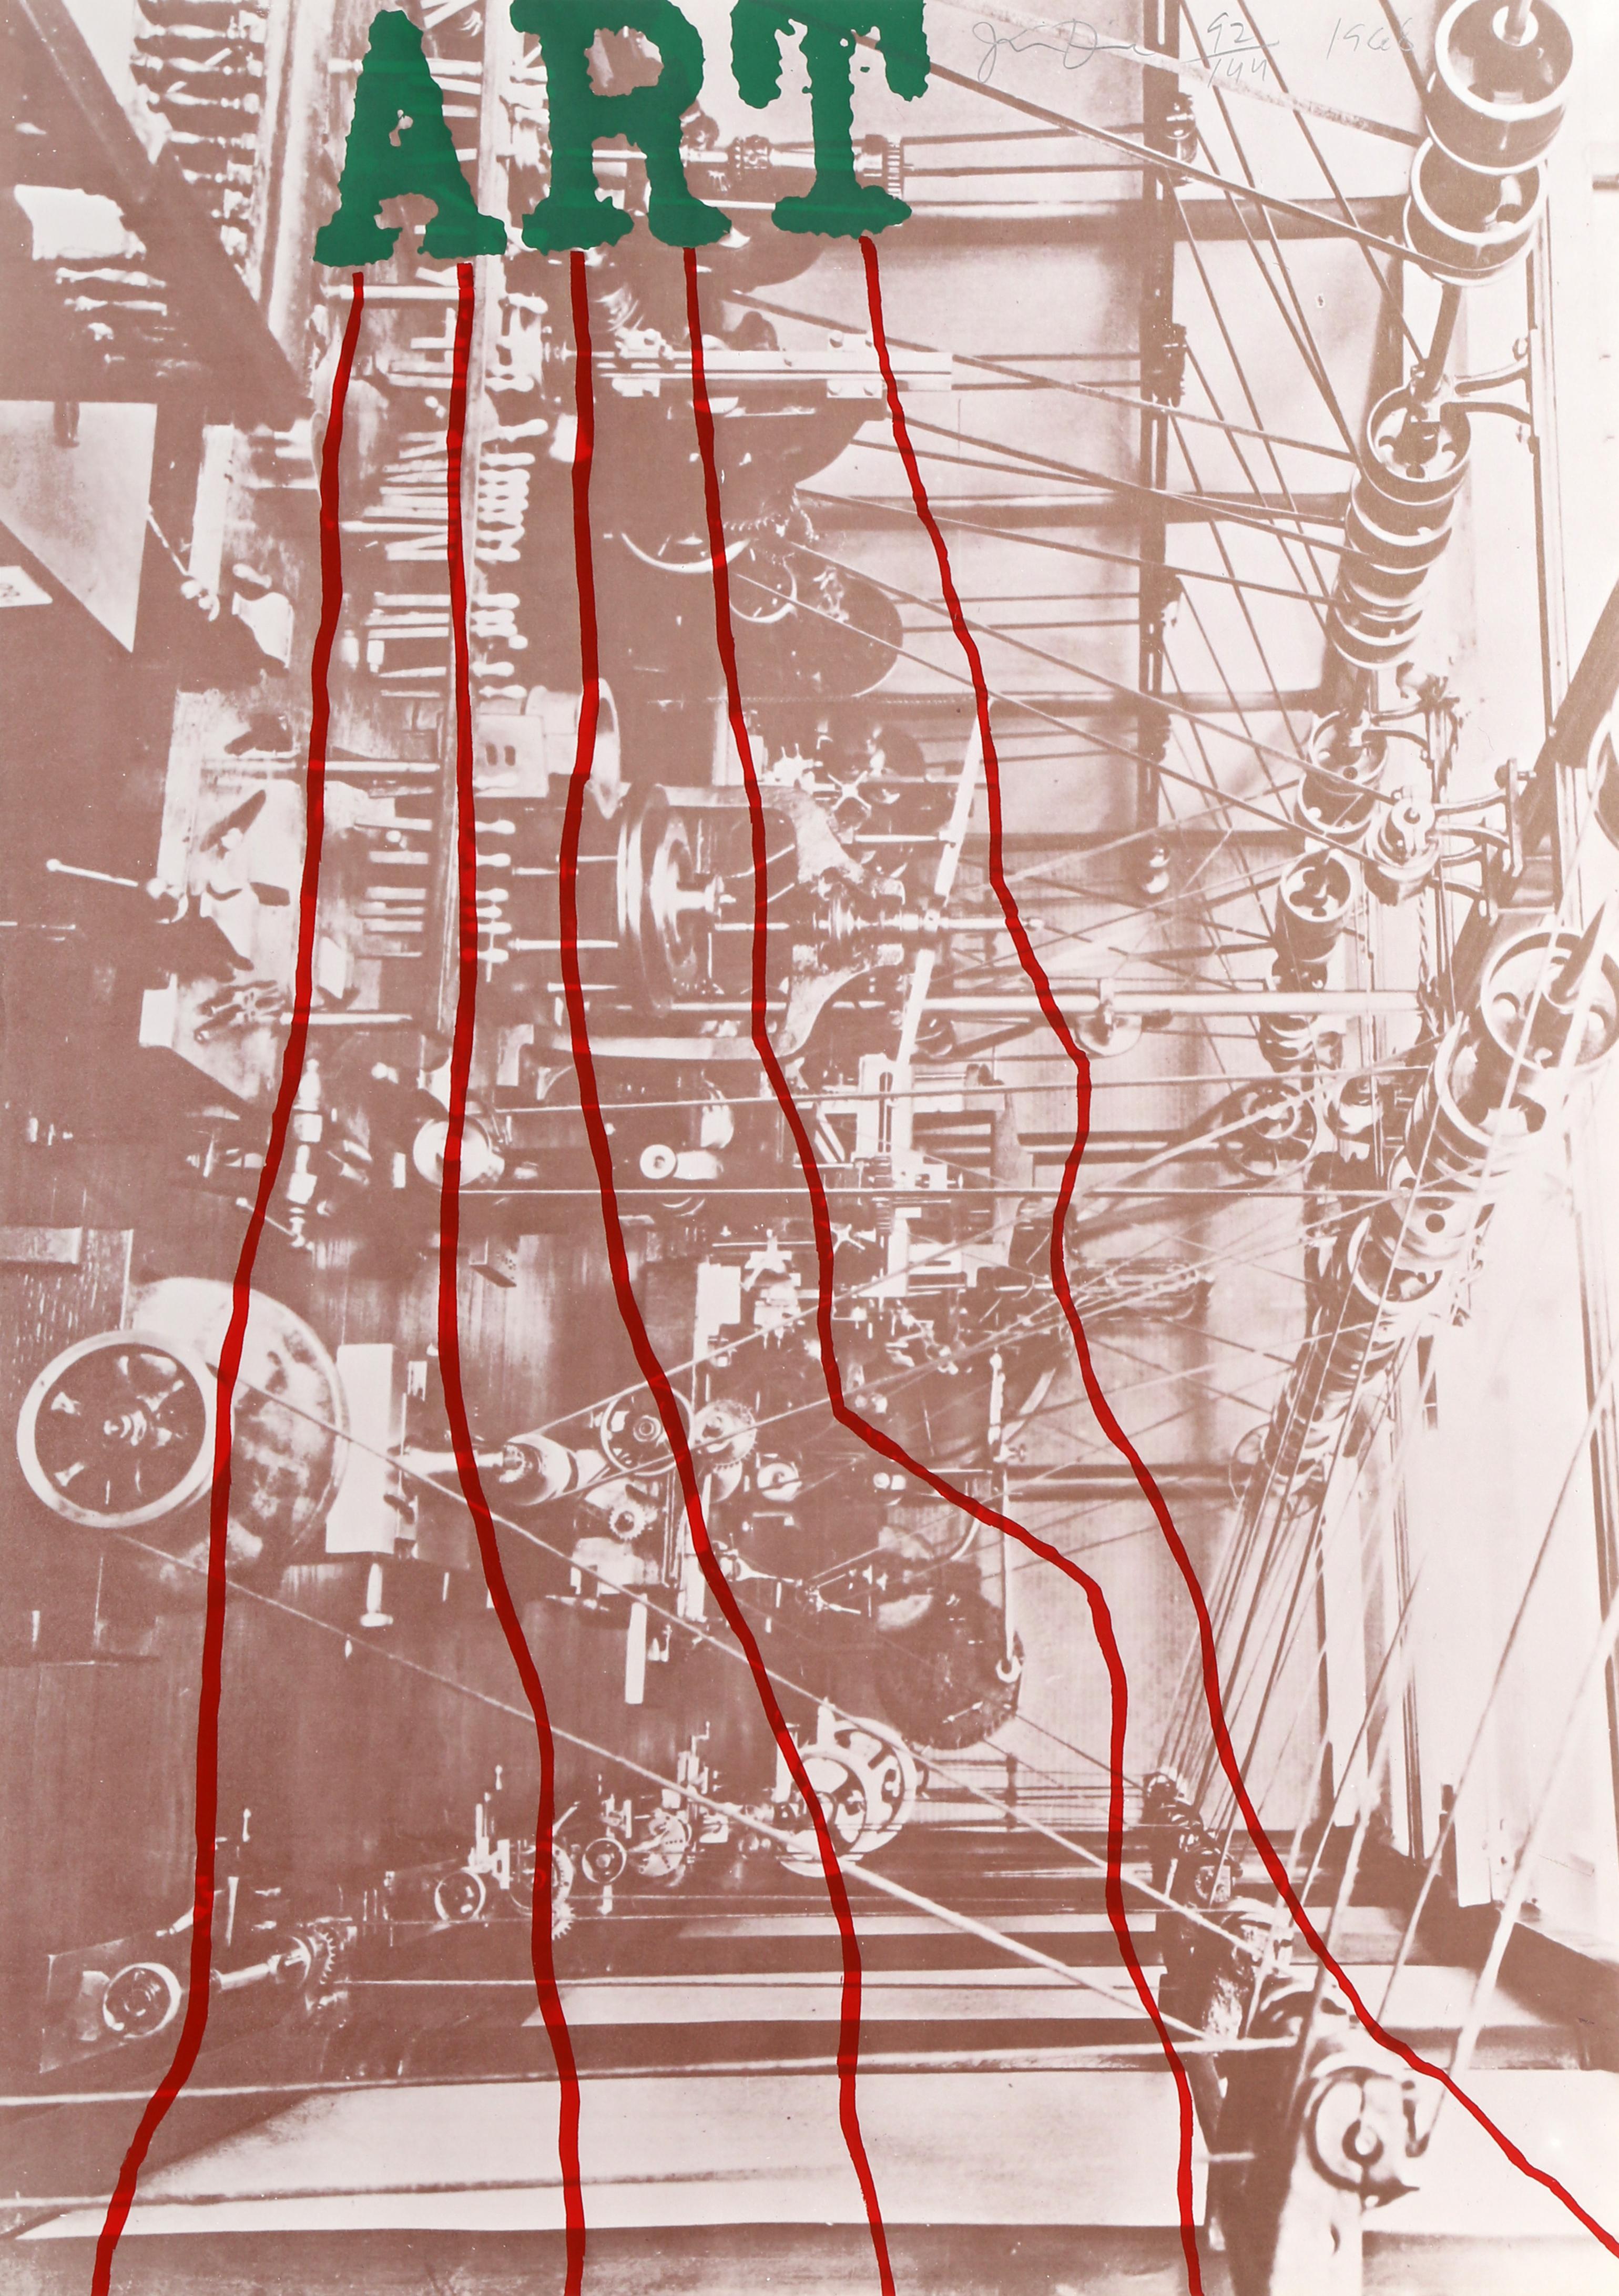 Künstler: Jim Dine     
Titel: ART
Jahr: 1968
Lithographie: Mit Bleistift signiert und nummeriert
Auflage:  92/144
Papierformat: 35 x 24,75 Zoll (89,8,9 x 62,87 cm)